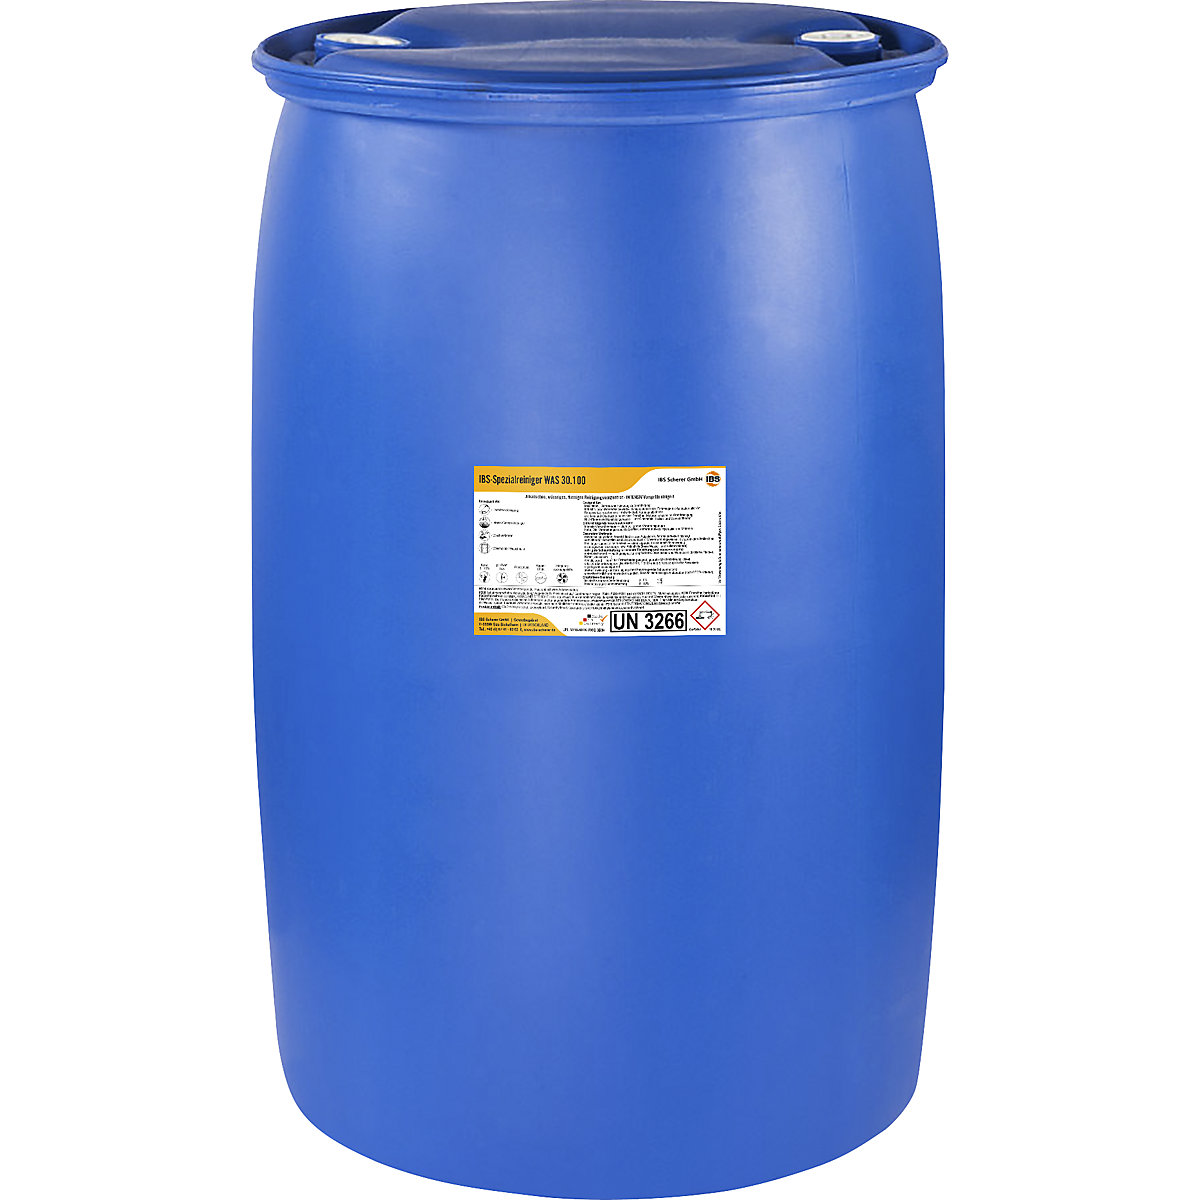 IBS Scherer – Detergente para alta pressão/pré-pulverização WAS 30.100, valor pH 13,5, capacidade 200 l